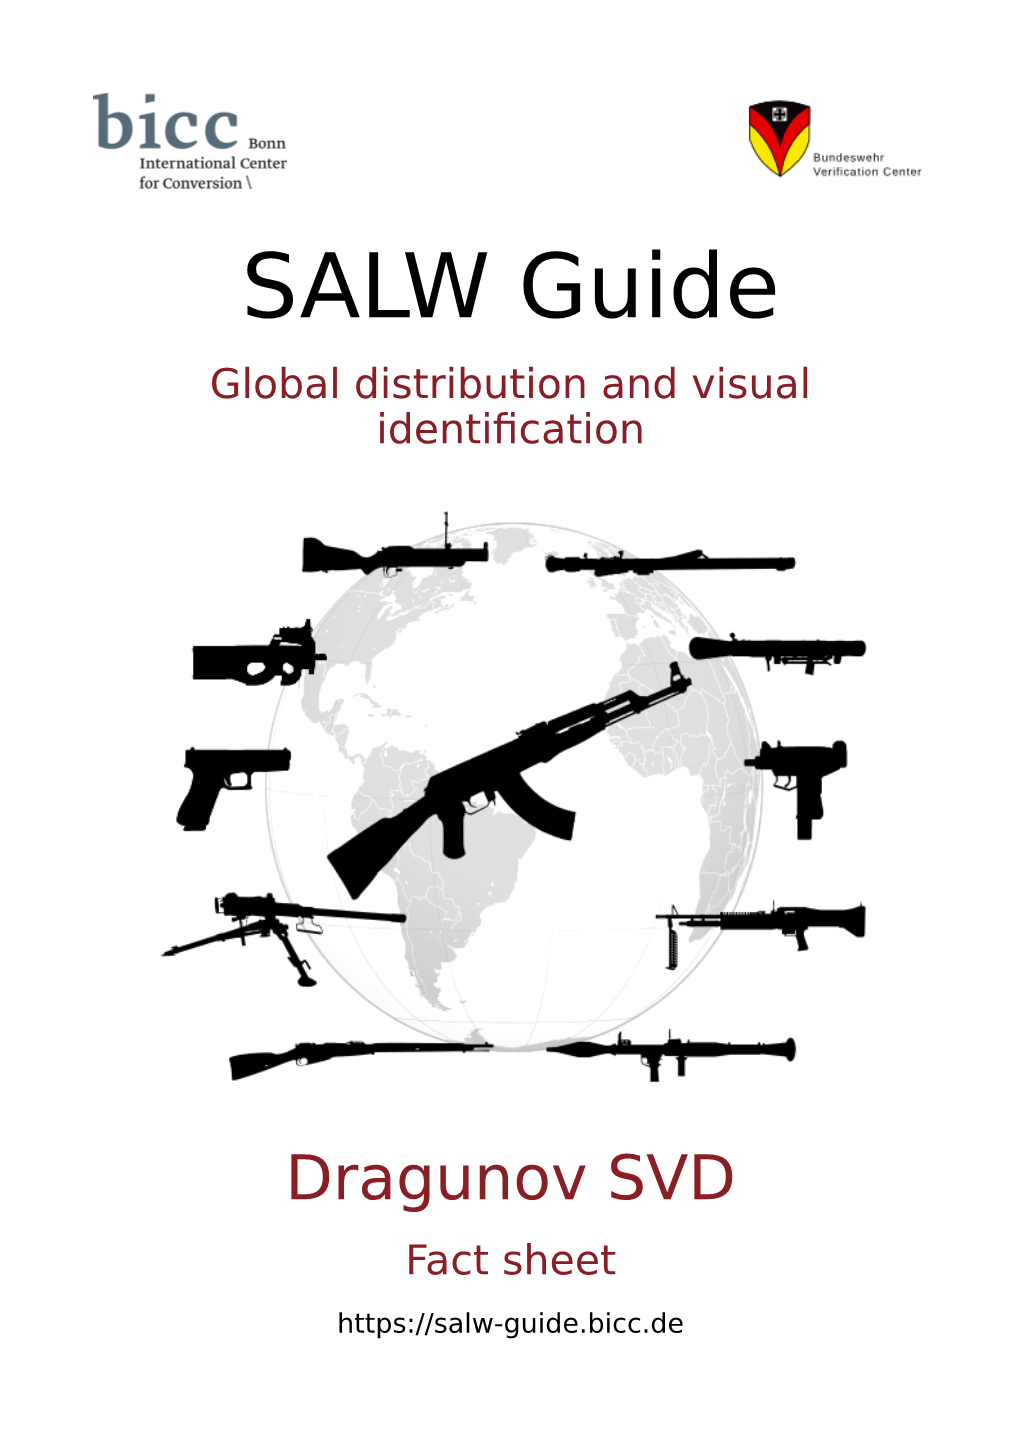 Dragunov SVD Fact Sheet